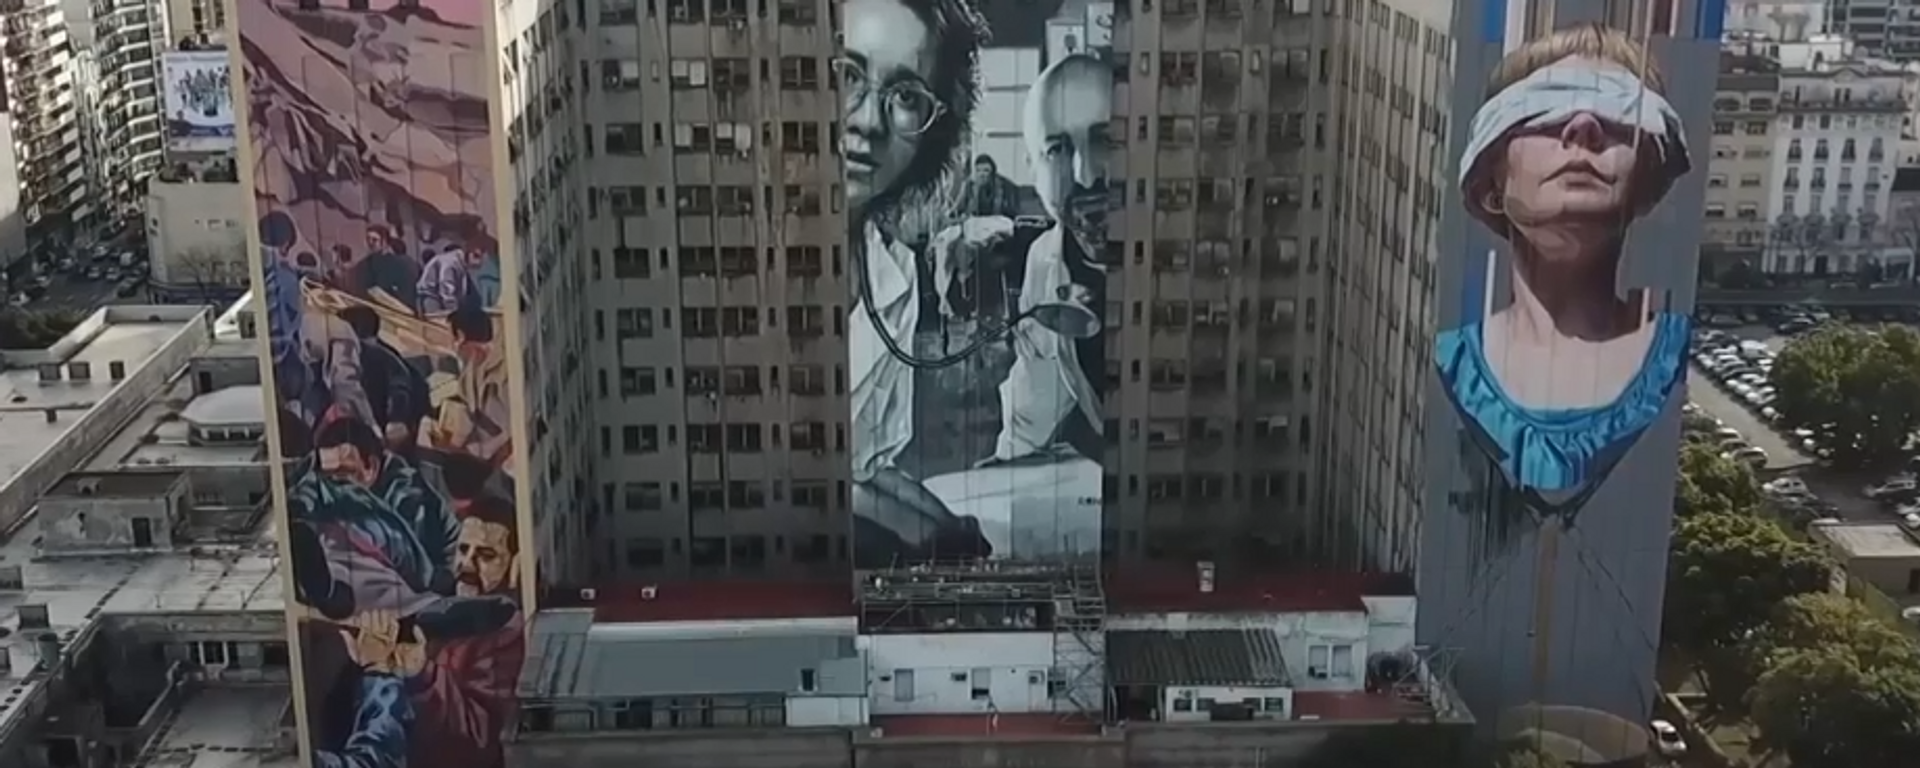 Tres murales en Argentina para recordar el atentado a la AMIA - Sputnik Mundo, 1920, 18.07.2019